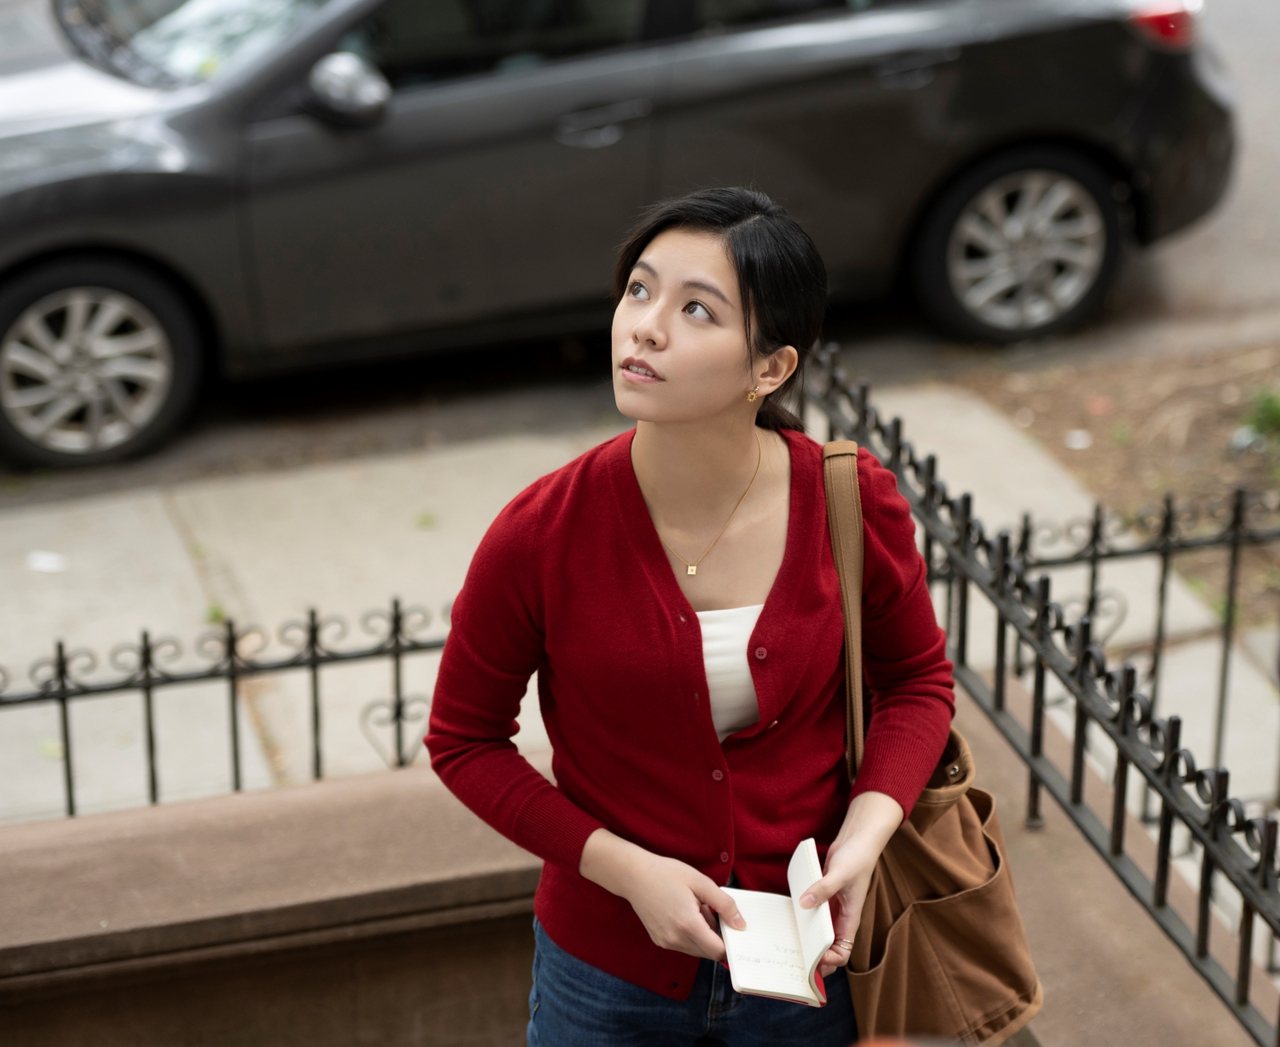 宋芸樺在《我的天堂城市》飾演一位在紐約打工賺錢的留學生。圖/滿滿額娛樂提供